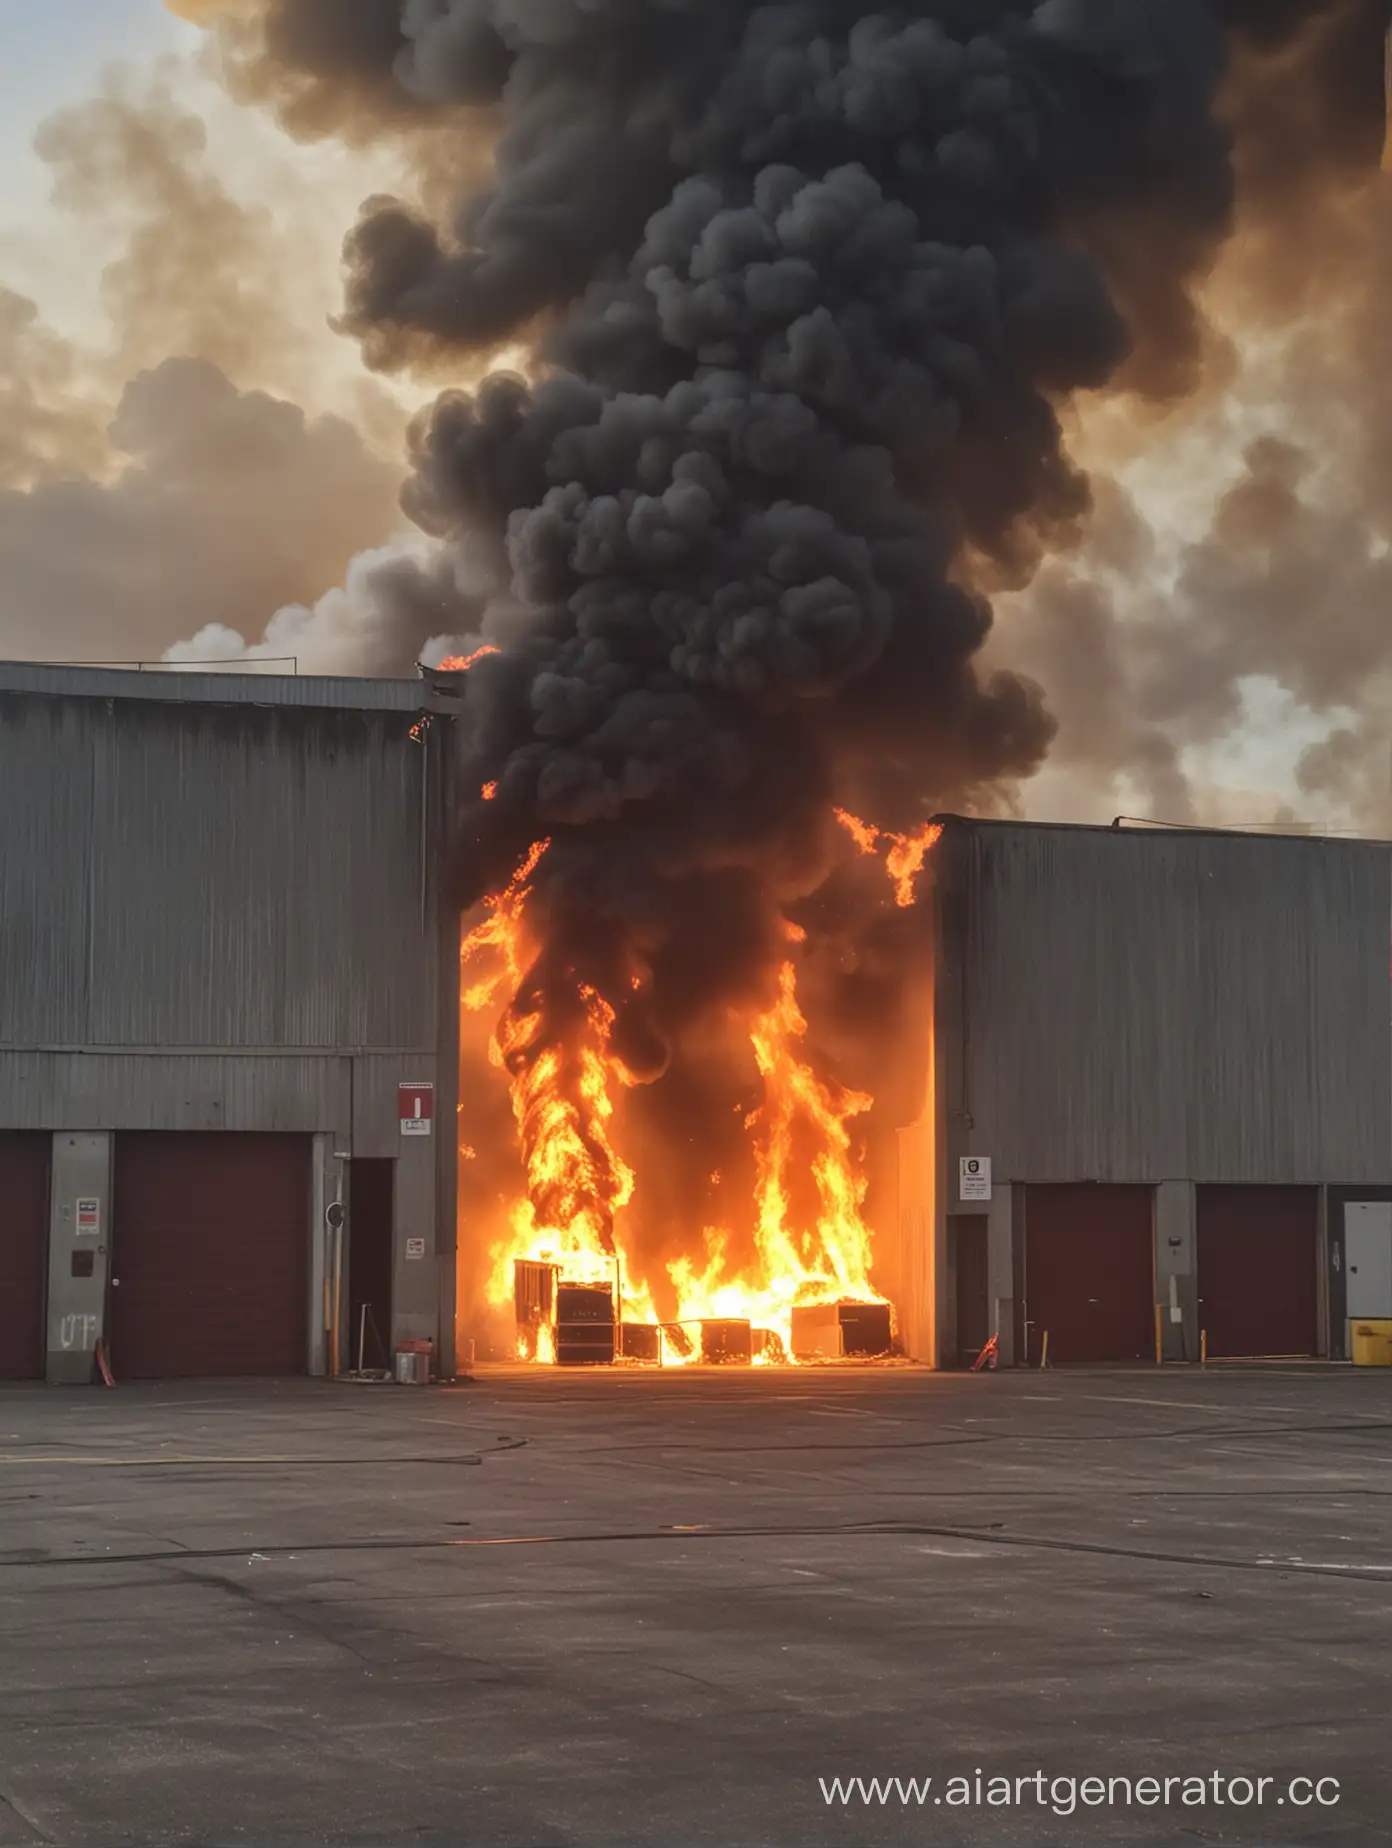 Blaze-Engulfs-Warehouse-District-in-Fiery-Inferno